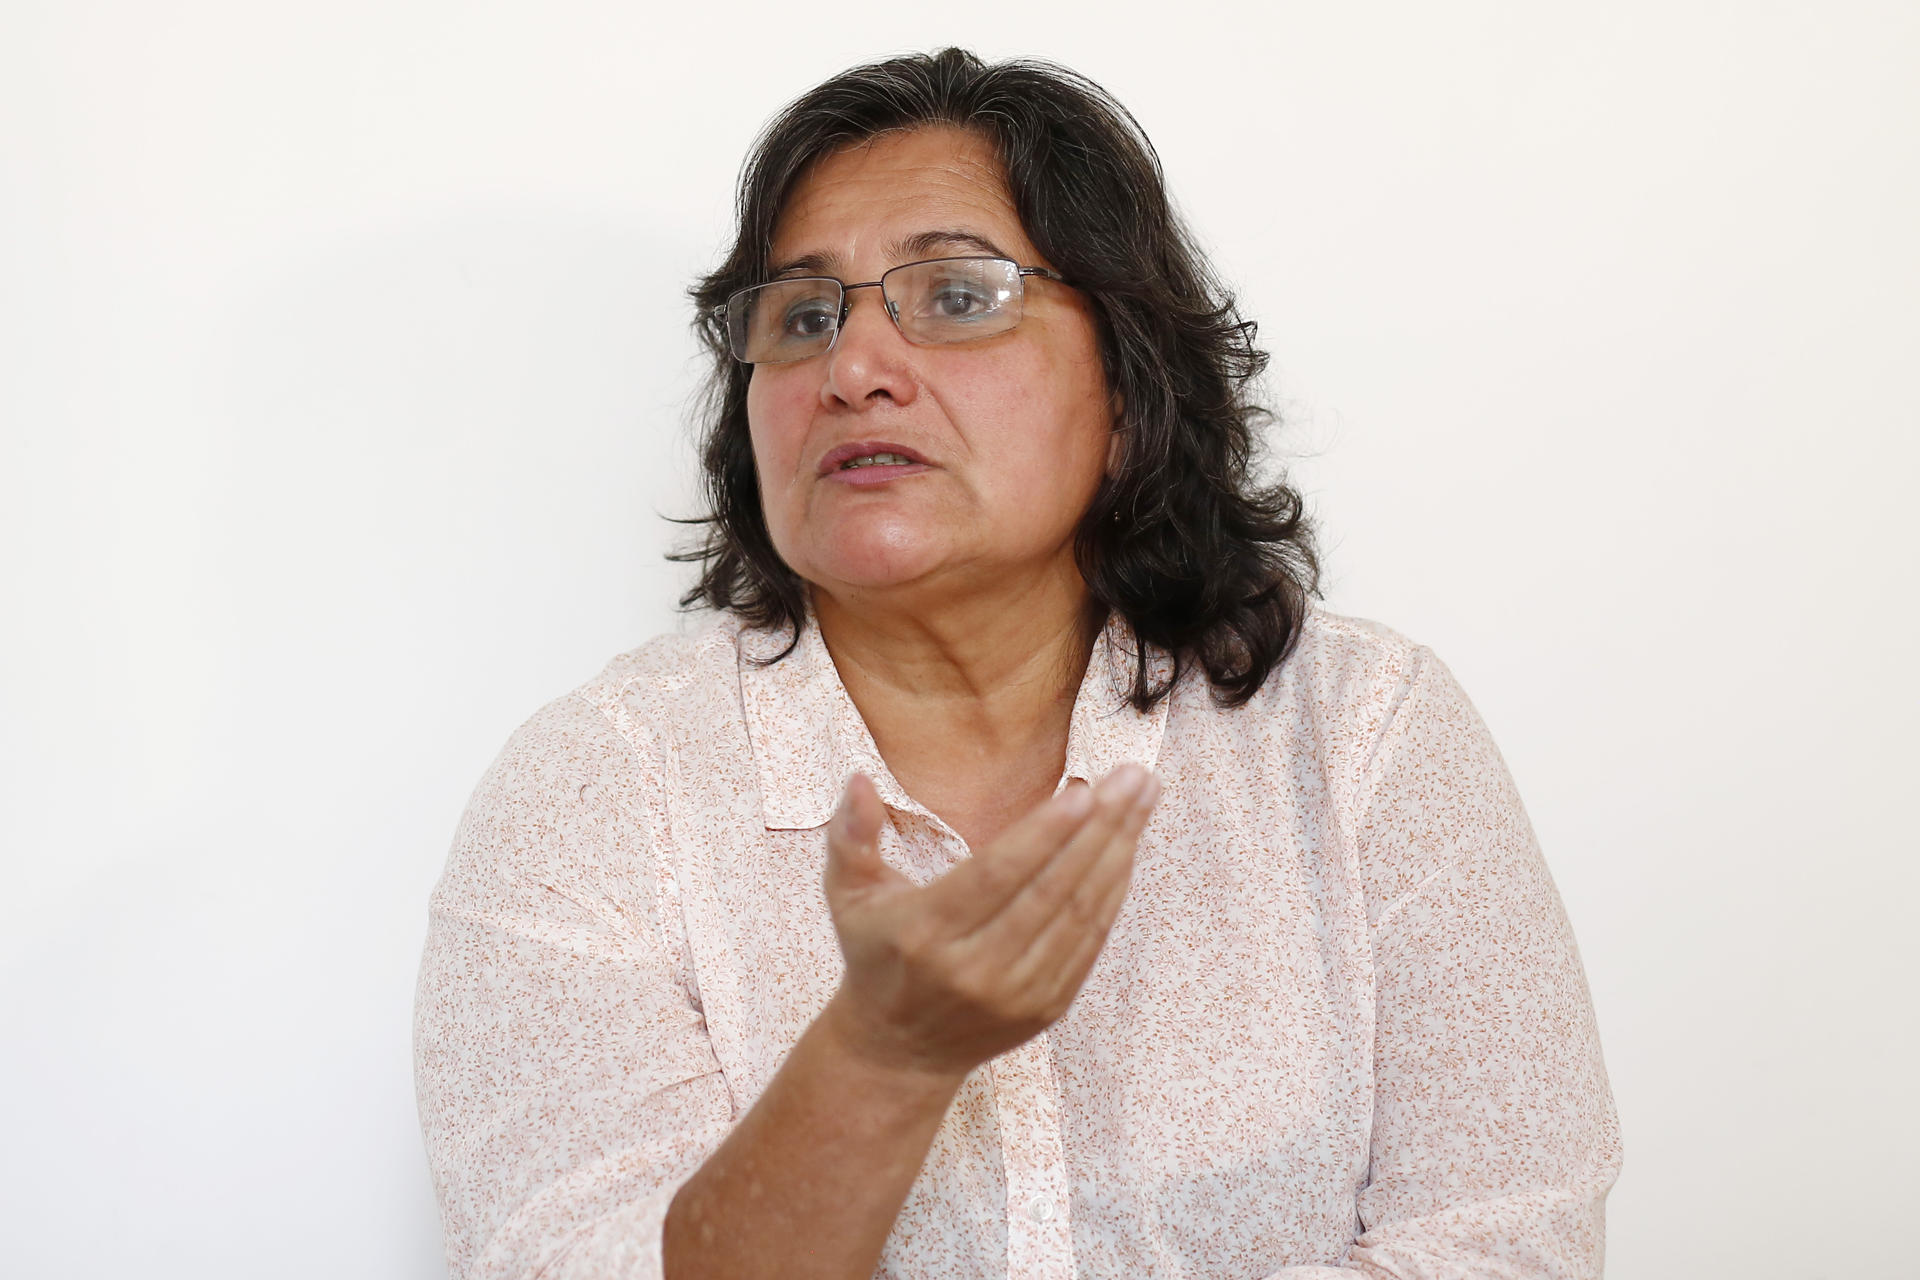 Celia Medrano, defensora de derechos humanos y aspirante a la Vicepresidencia por el Movimiento Sumar, habla durante una entrevista con EFE, el 6 de junio de 2023, en San Salvador (El Salvador). EFE/Rodrigo Sura